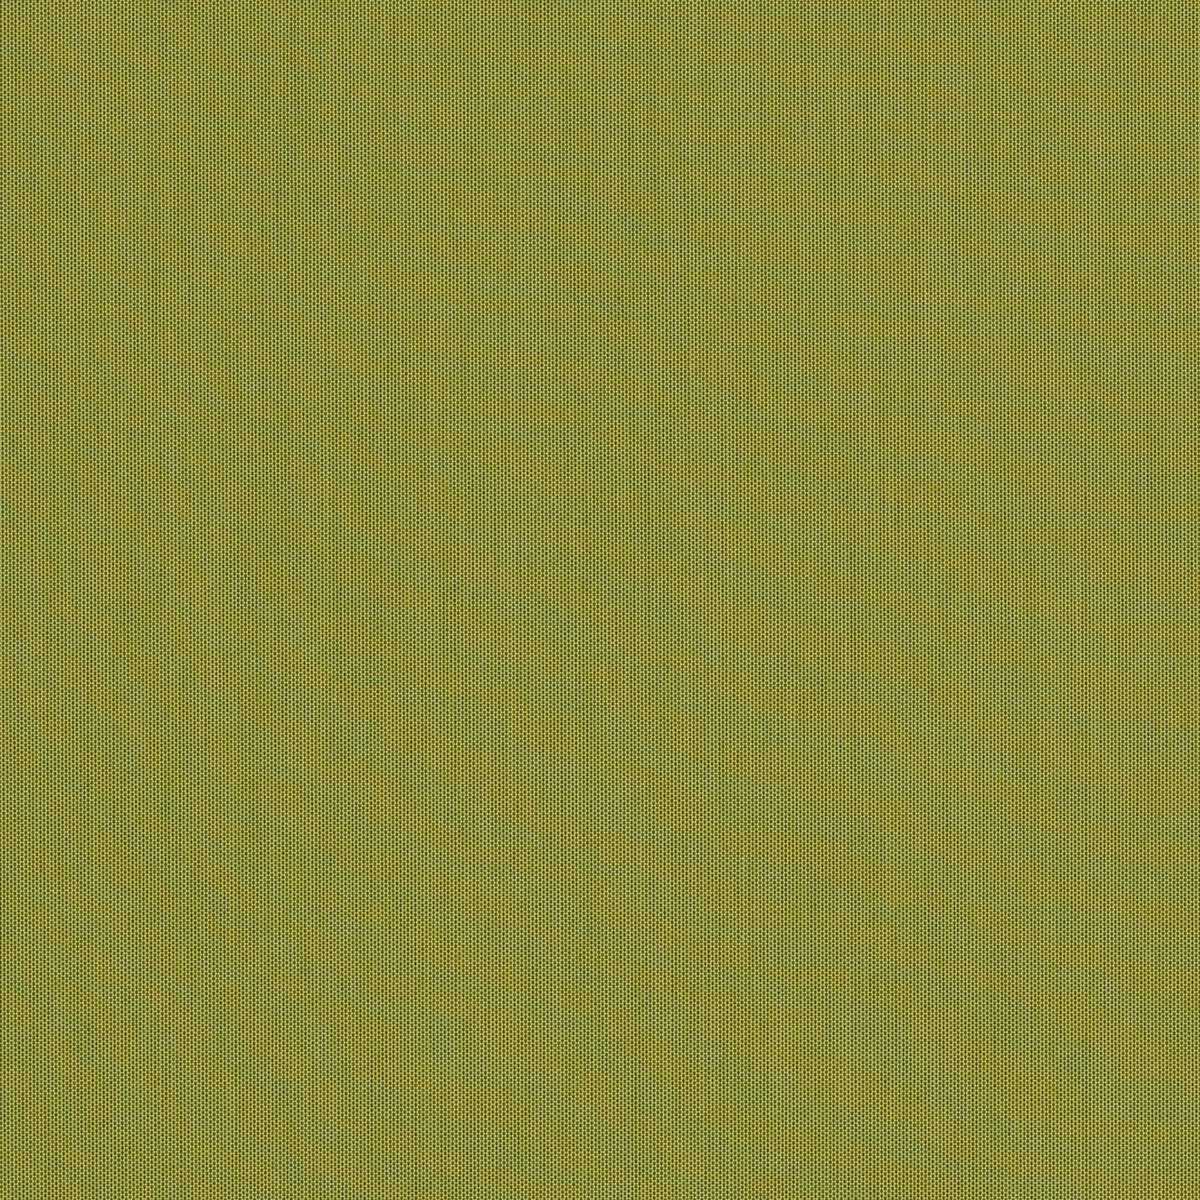 Venkovní látka Sunbrella Solids and Stripes - 3970 Lichen role 50 metrů